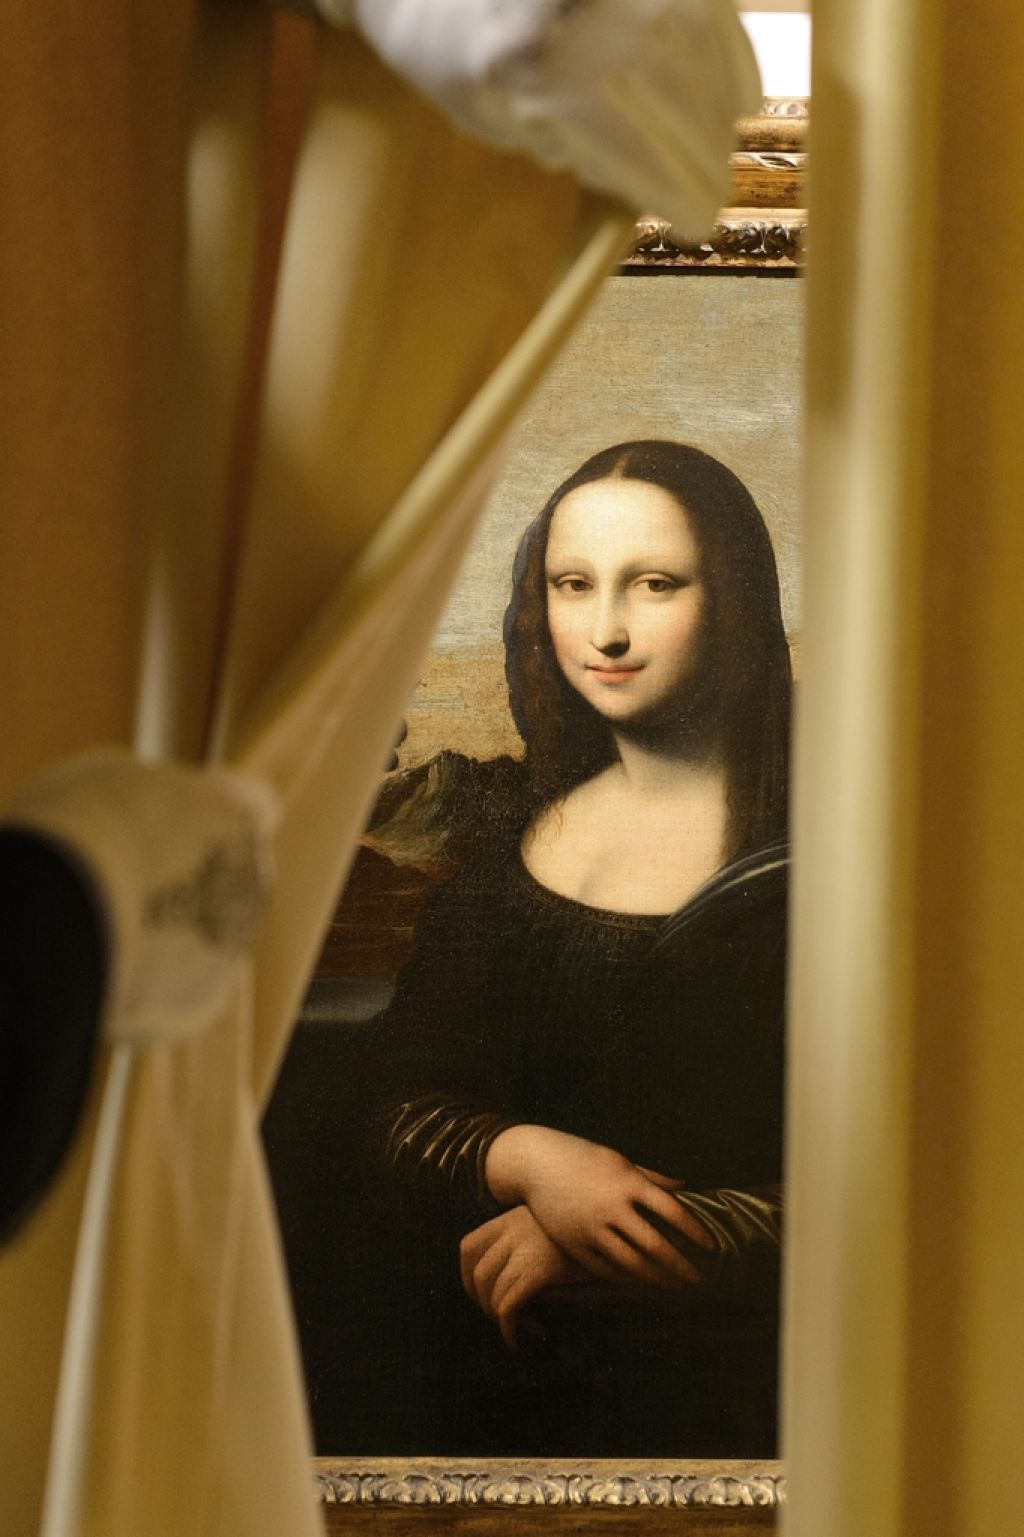 Dozdevna predhodnica Mona Lize